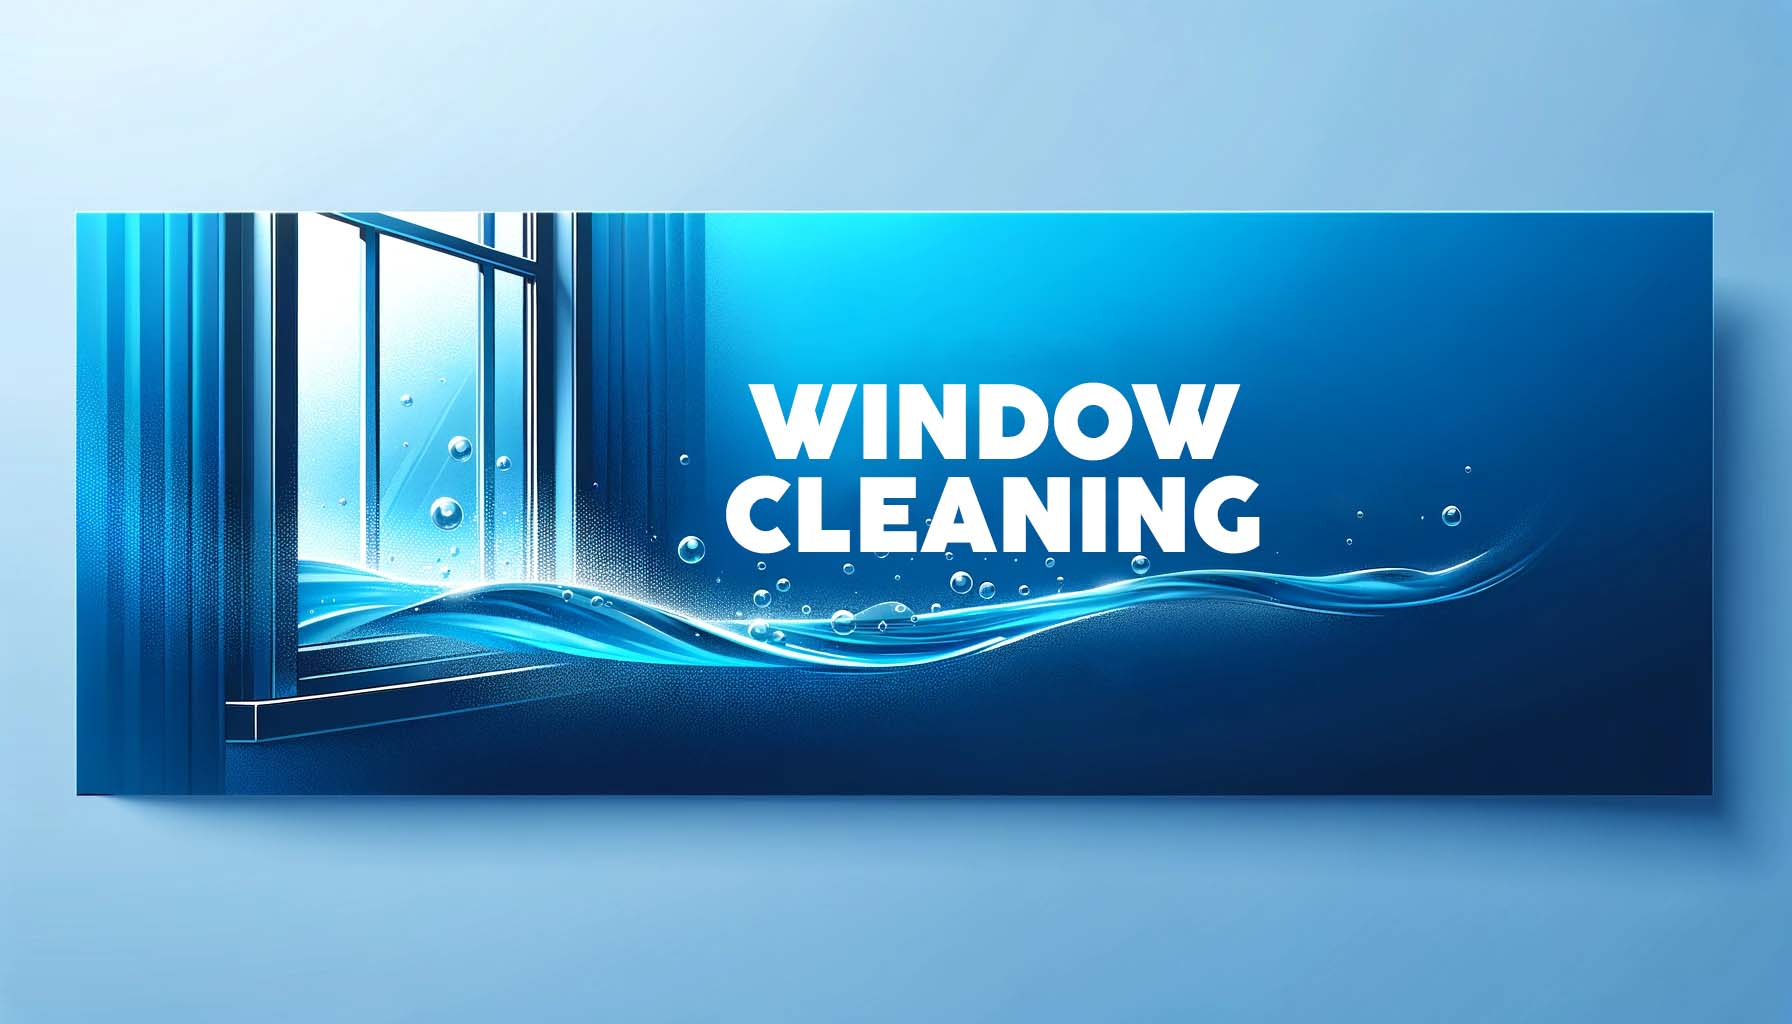 Buy Window Cleaning Tools | Springs Street Online Shop UAE